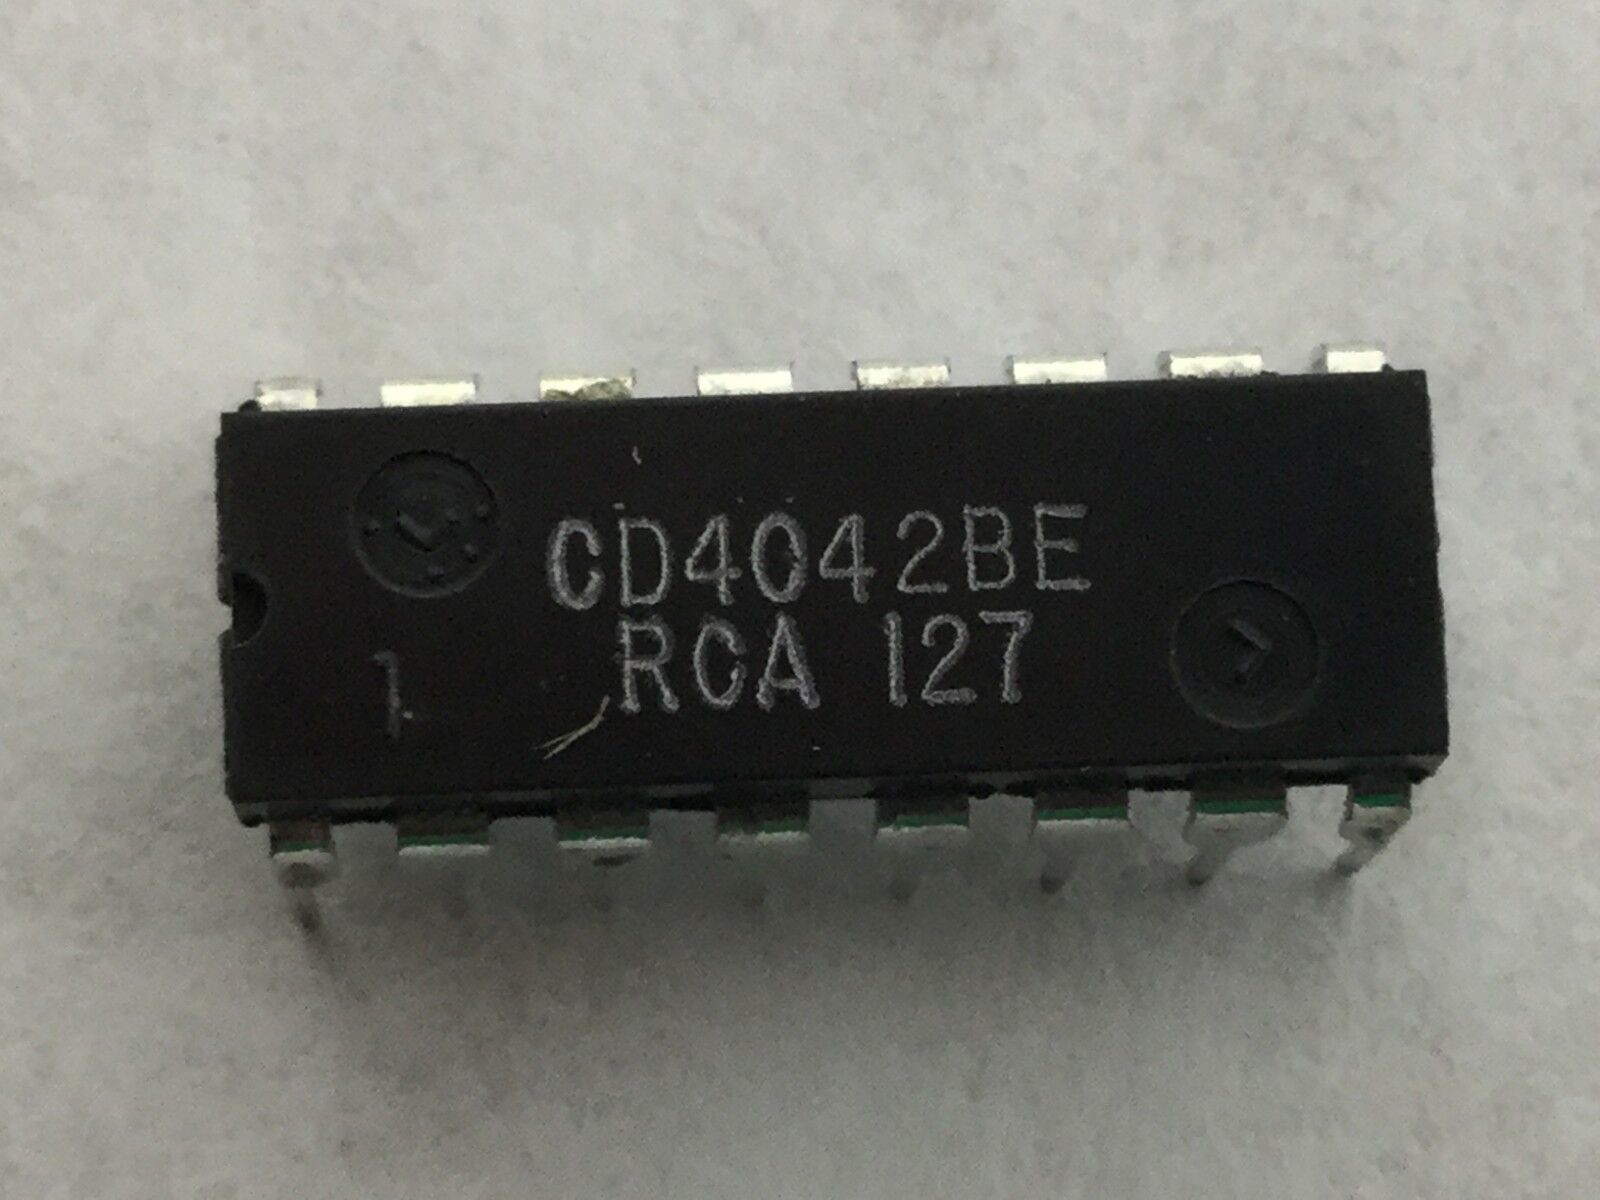 Genuine RCA CD4042BE Integrated Circuit  16 Pin Dip  Lot of 23